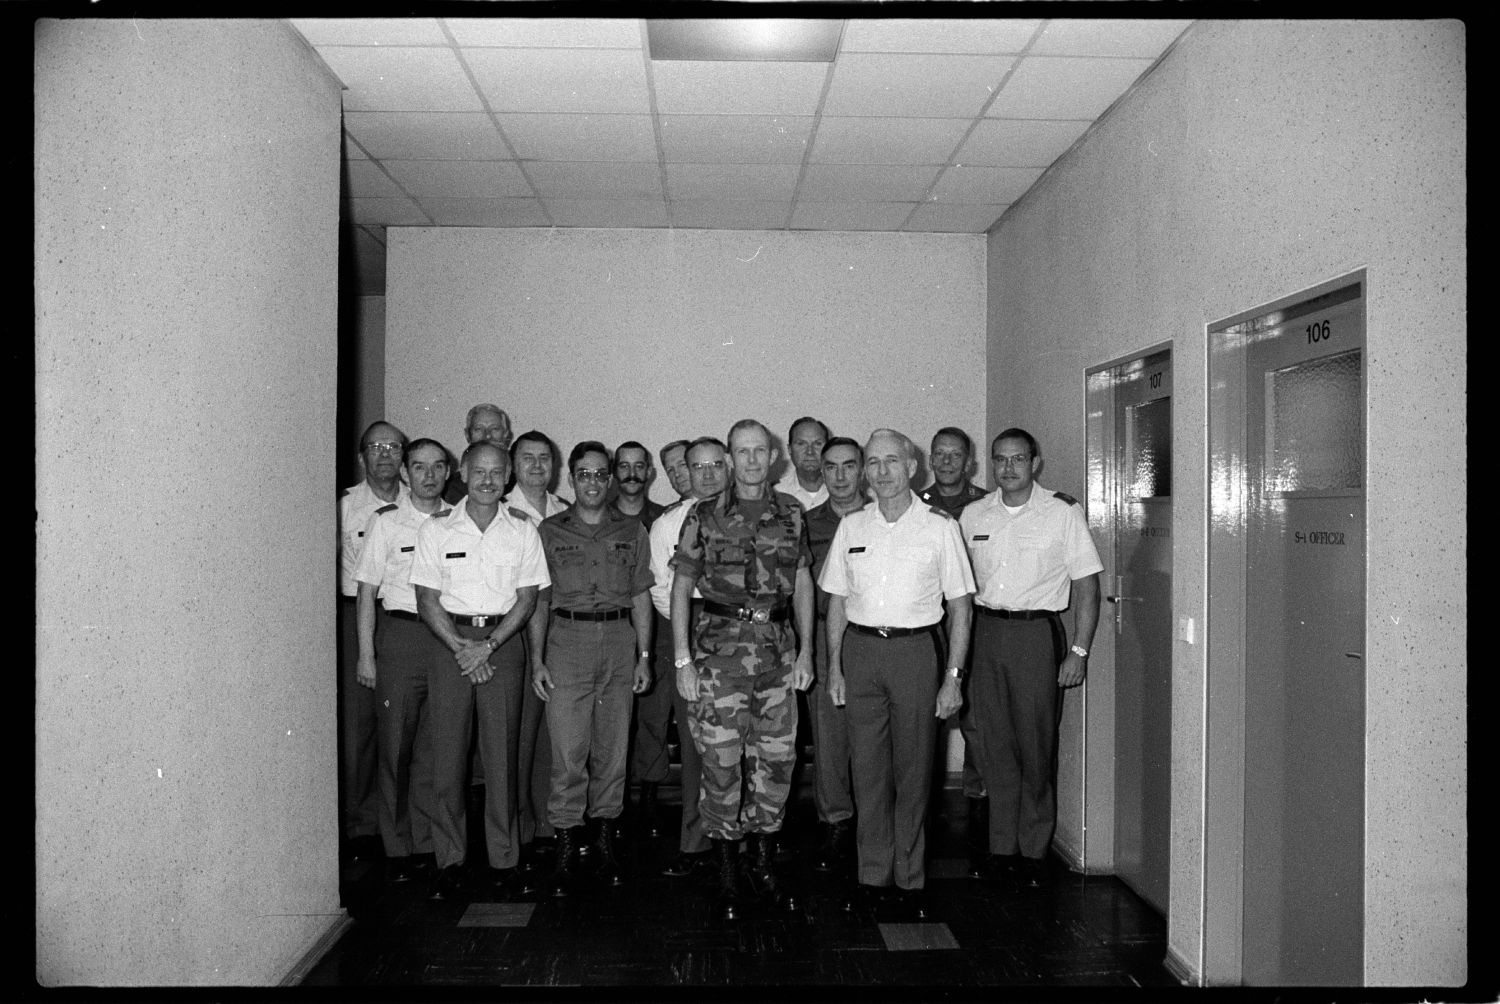 s/w-Fotografie: Besuch von Brigadier General Jack D. Woodall beim 6941st Guard Battalion in Berlin-Lichterfelde (AlliiertenMuseum/U.S. Army Photograph Public Domain Mark)